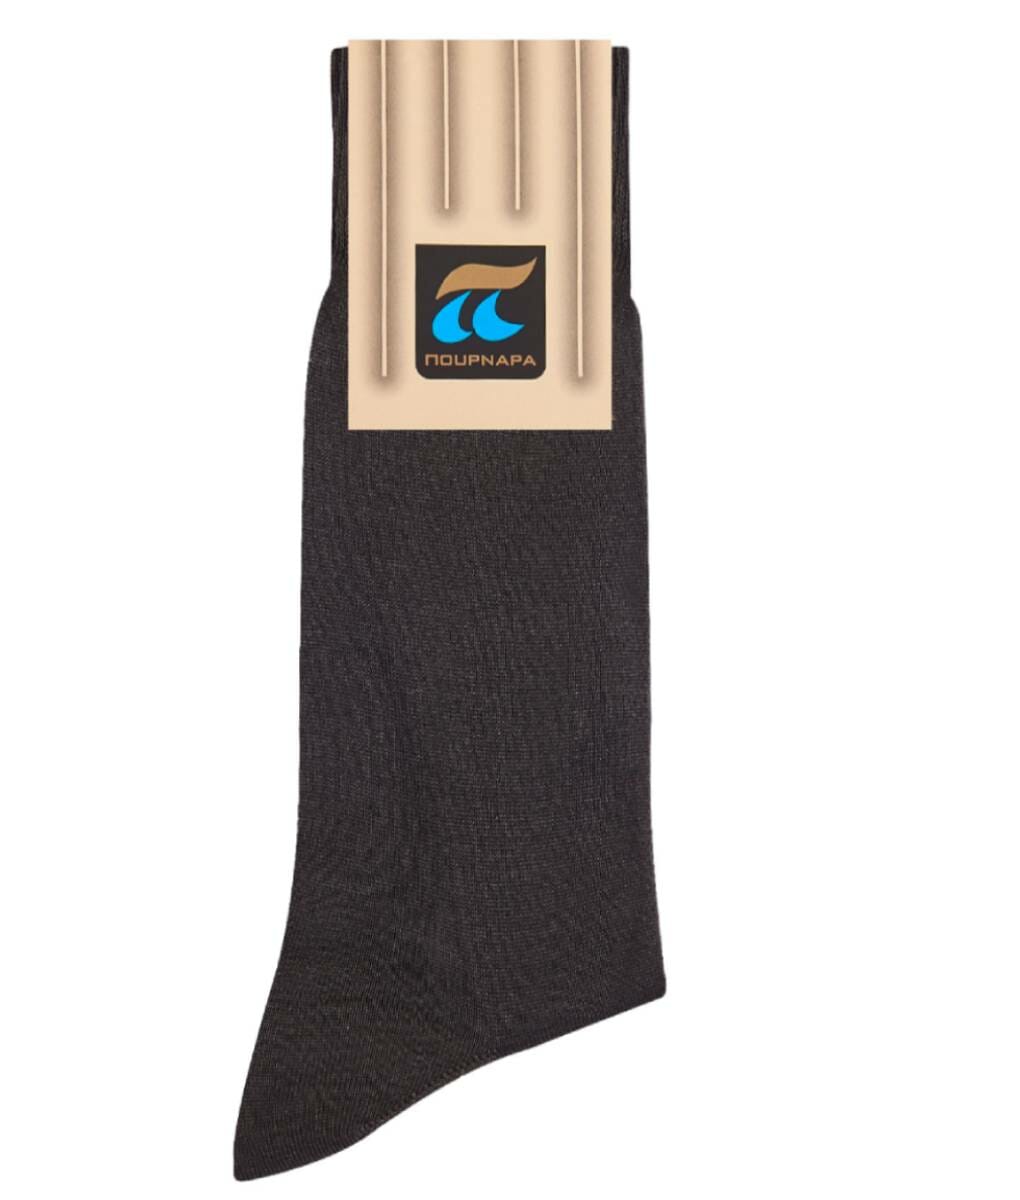 Ανδρική βαμβακερή κάλτσα γκρι σκούρο Πουρνάρας 1+1 ΔΩΡΟ Κωδ. 101-72 P101 Γκρι Σκούρο